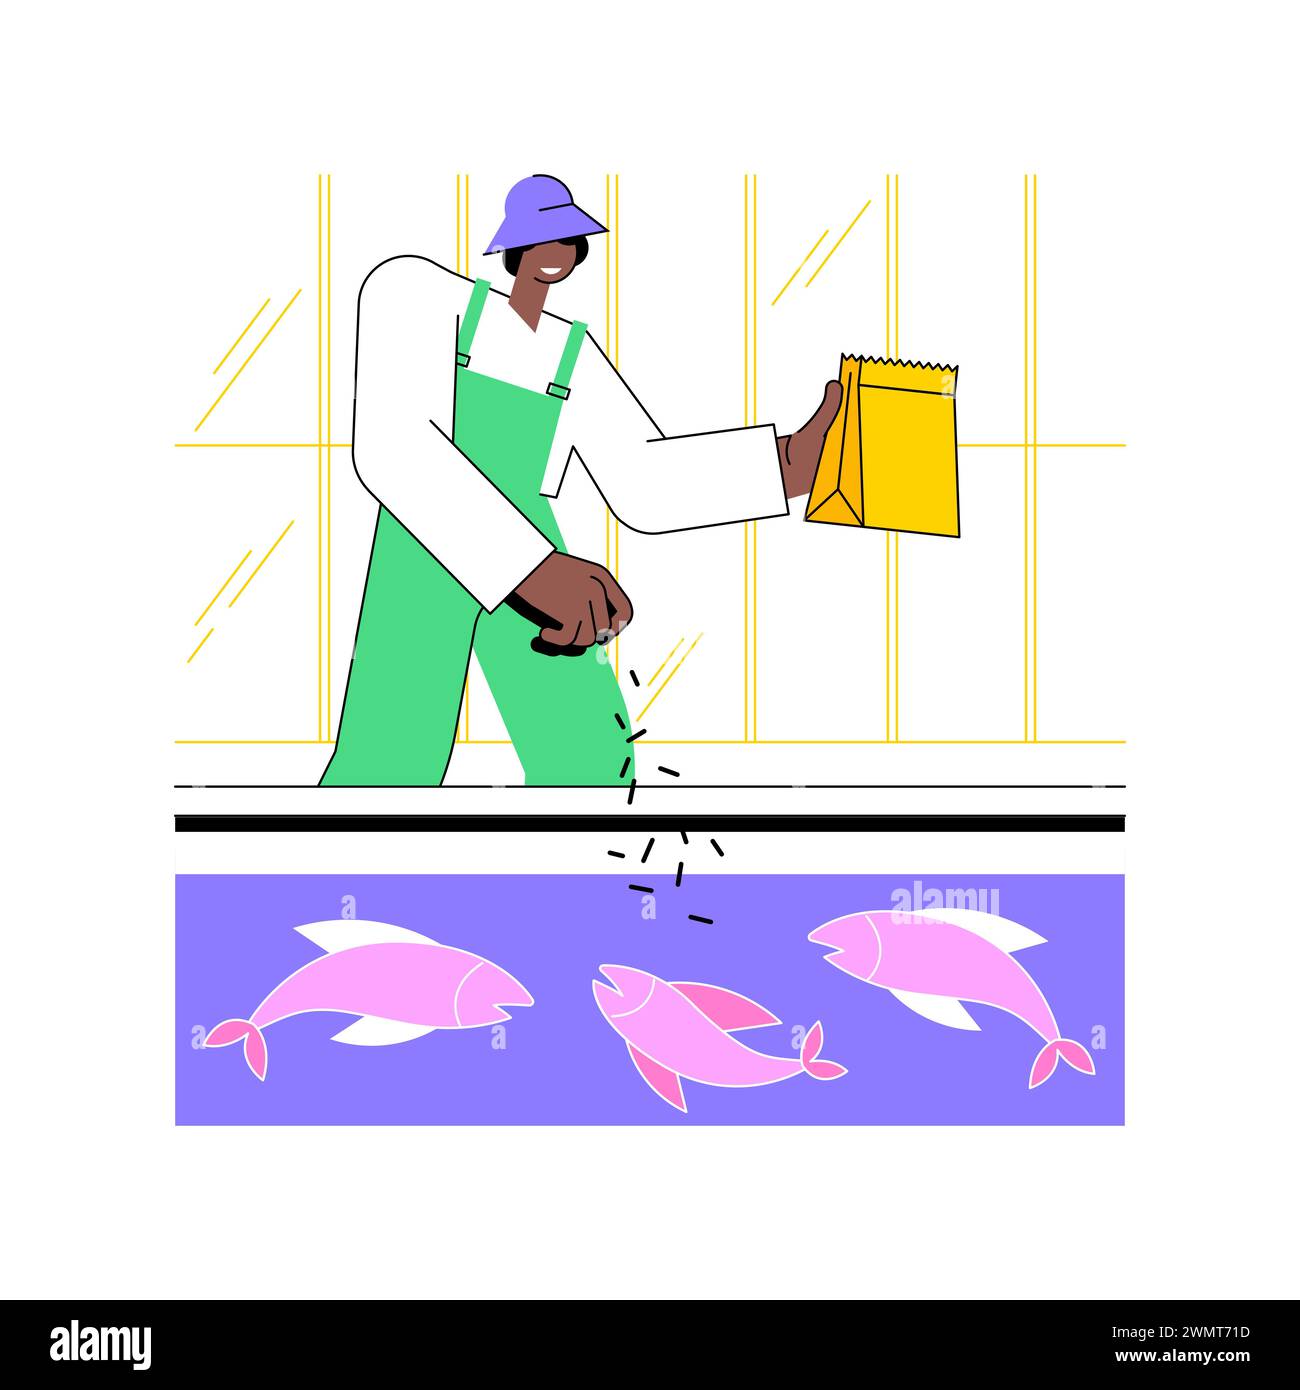 Fischzucht isolierte Cartoon-Vektor-Illustrationen. Landwirt wirft Lebensmittel in den Pool mit Fisch, Landwirtschaft Industrie, Landwirtschaft Arbeiter, Produktion Sektor, Tiere, die Vektor-Cartoon. Stock Vektor